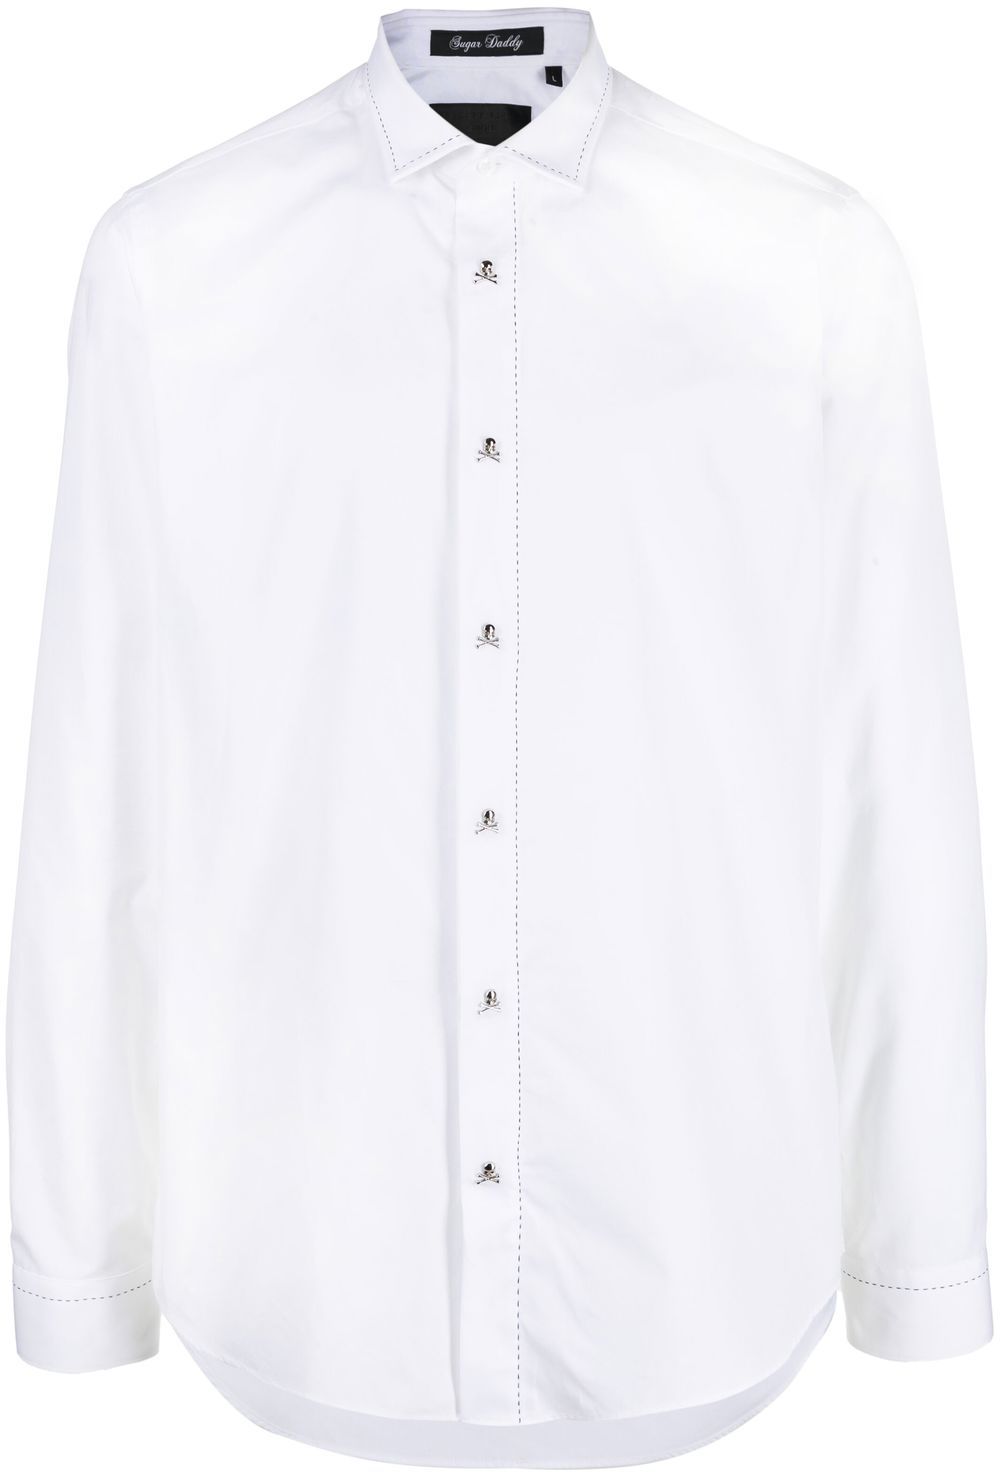 Philipp Plein Contrast Stitch Shirt In White